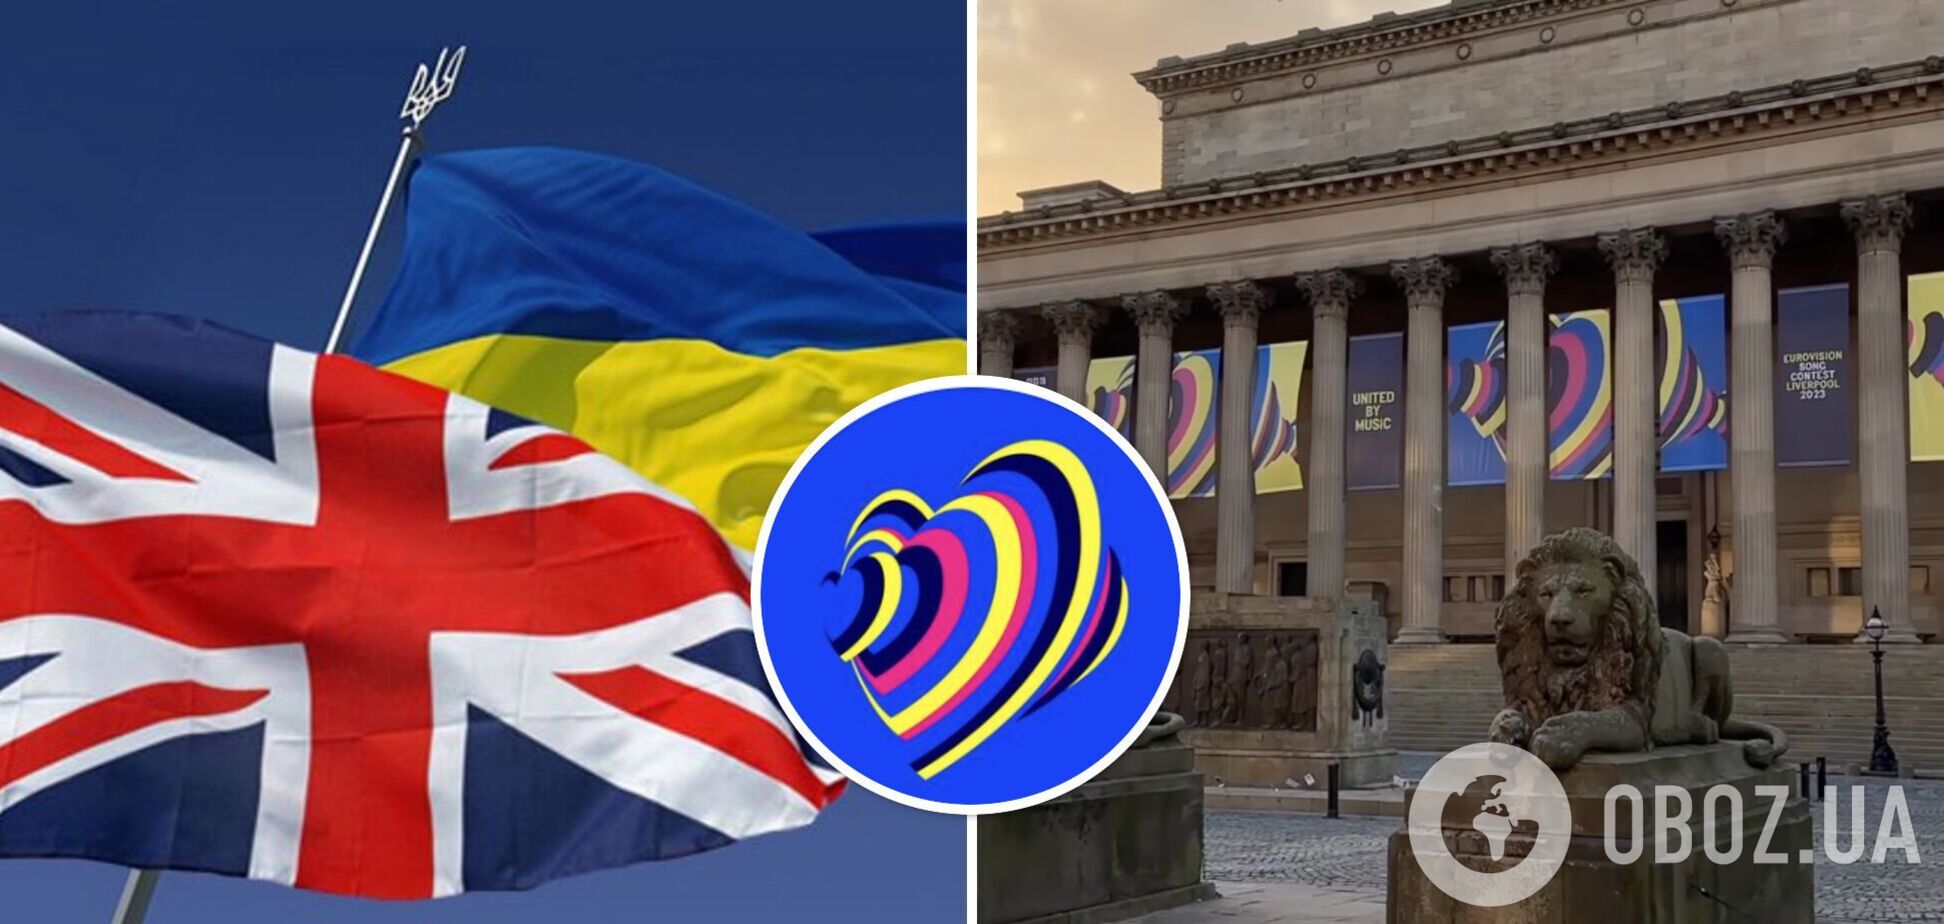 Організатори 'Євробачення' представили офіційний логотип та слоган конкурсу: як обіграли кольори  України